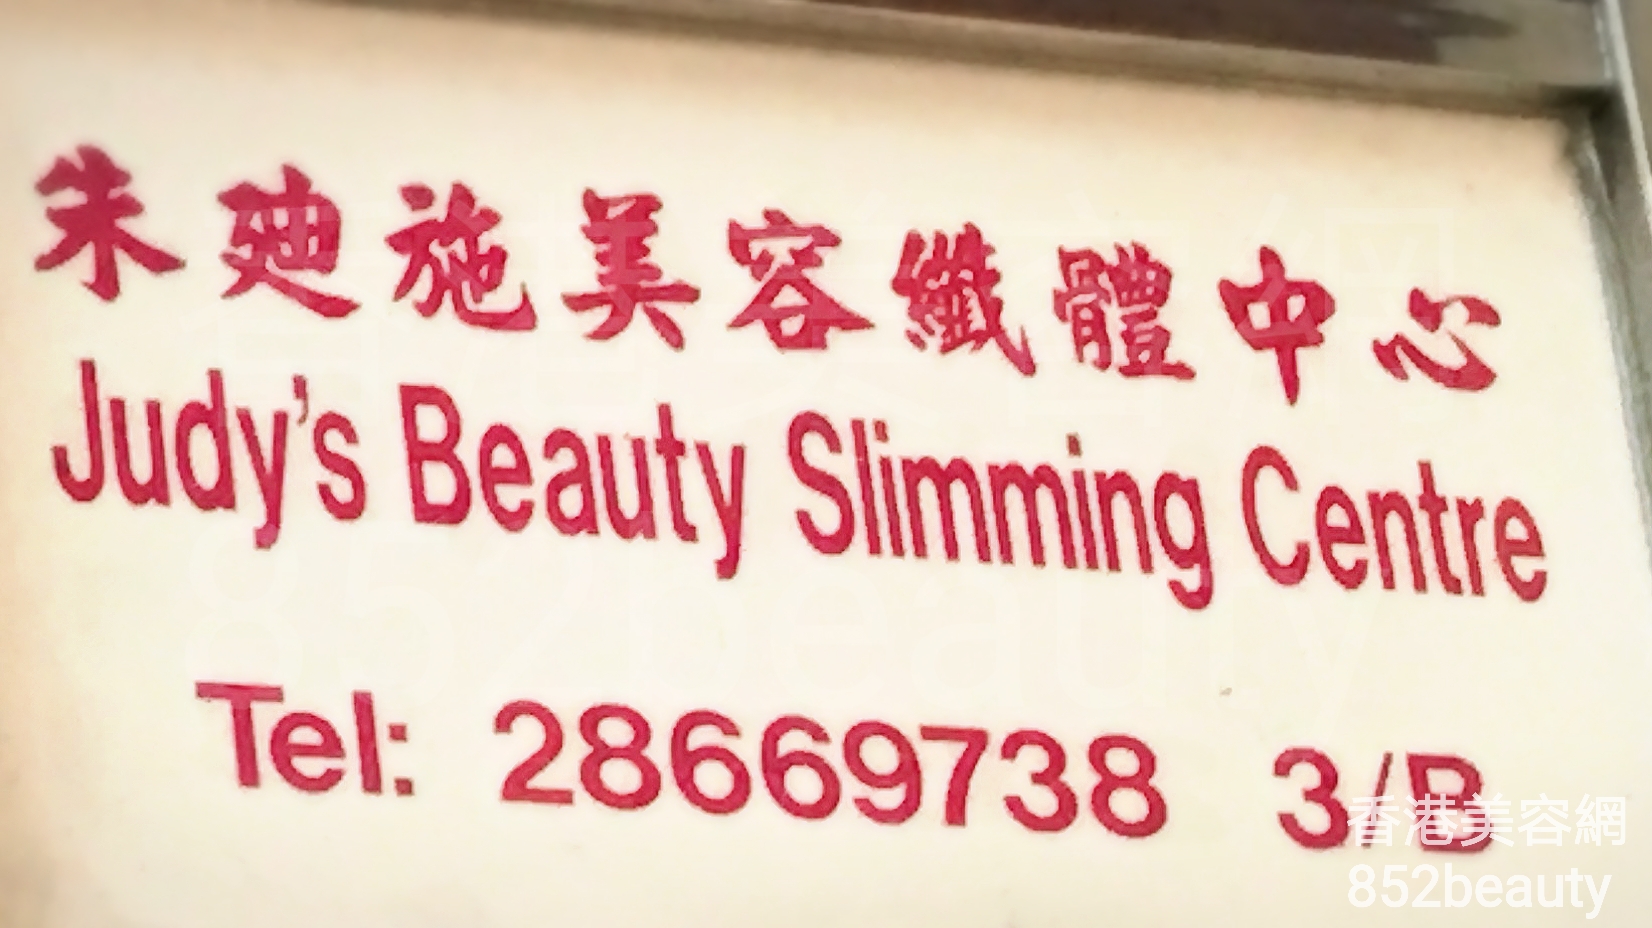 美容院: 朱廸施美容纖體中心 Judy\'s Beauty Slimming Centre